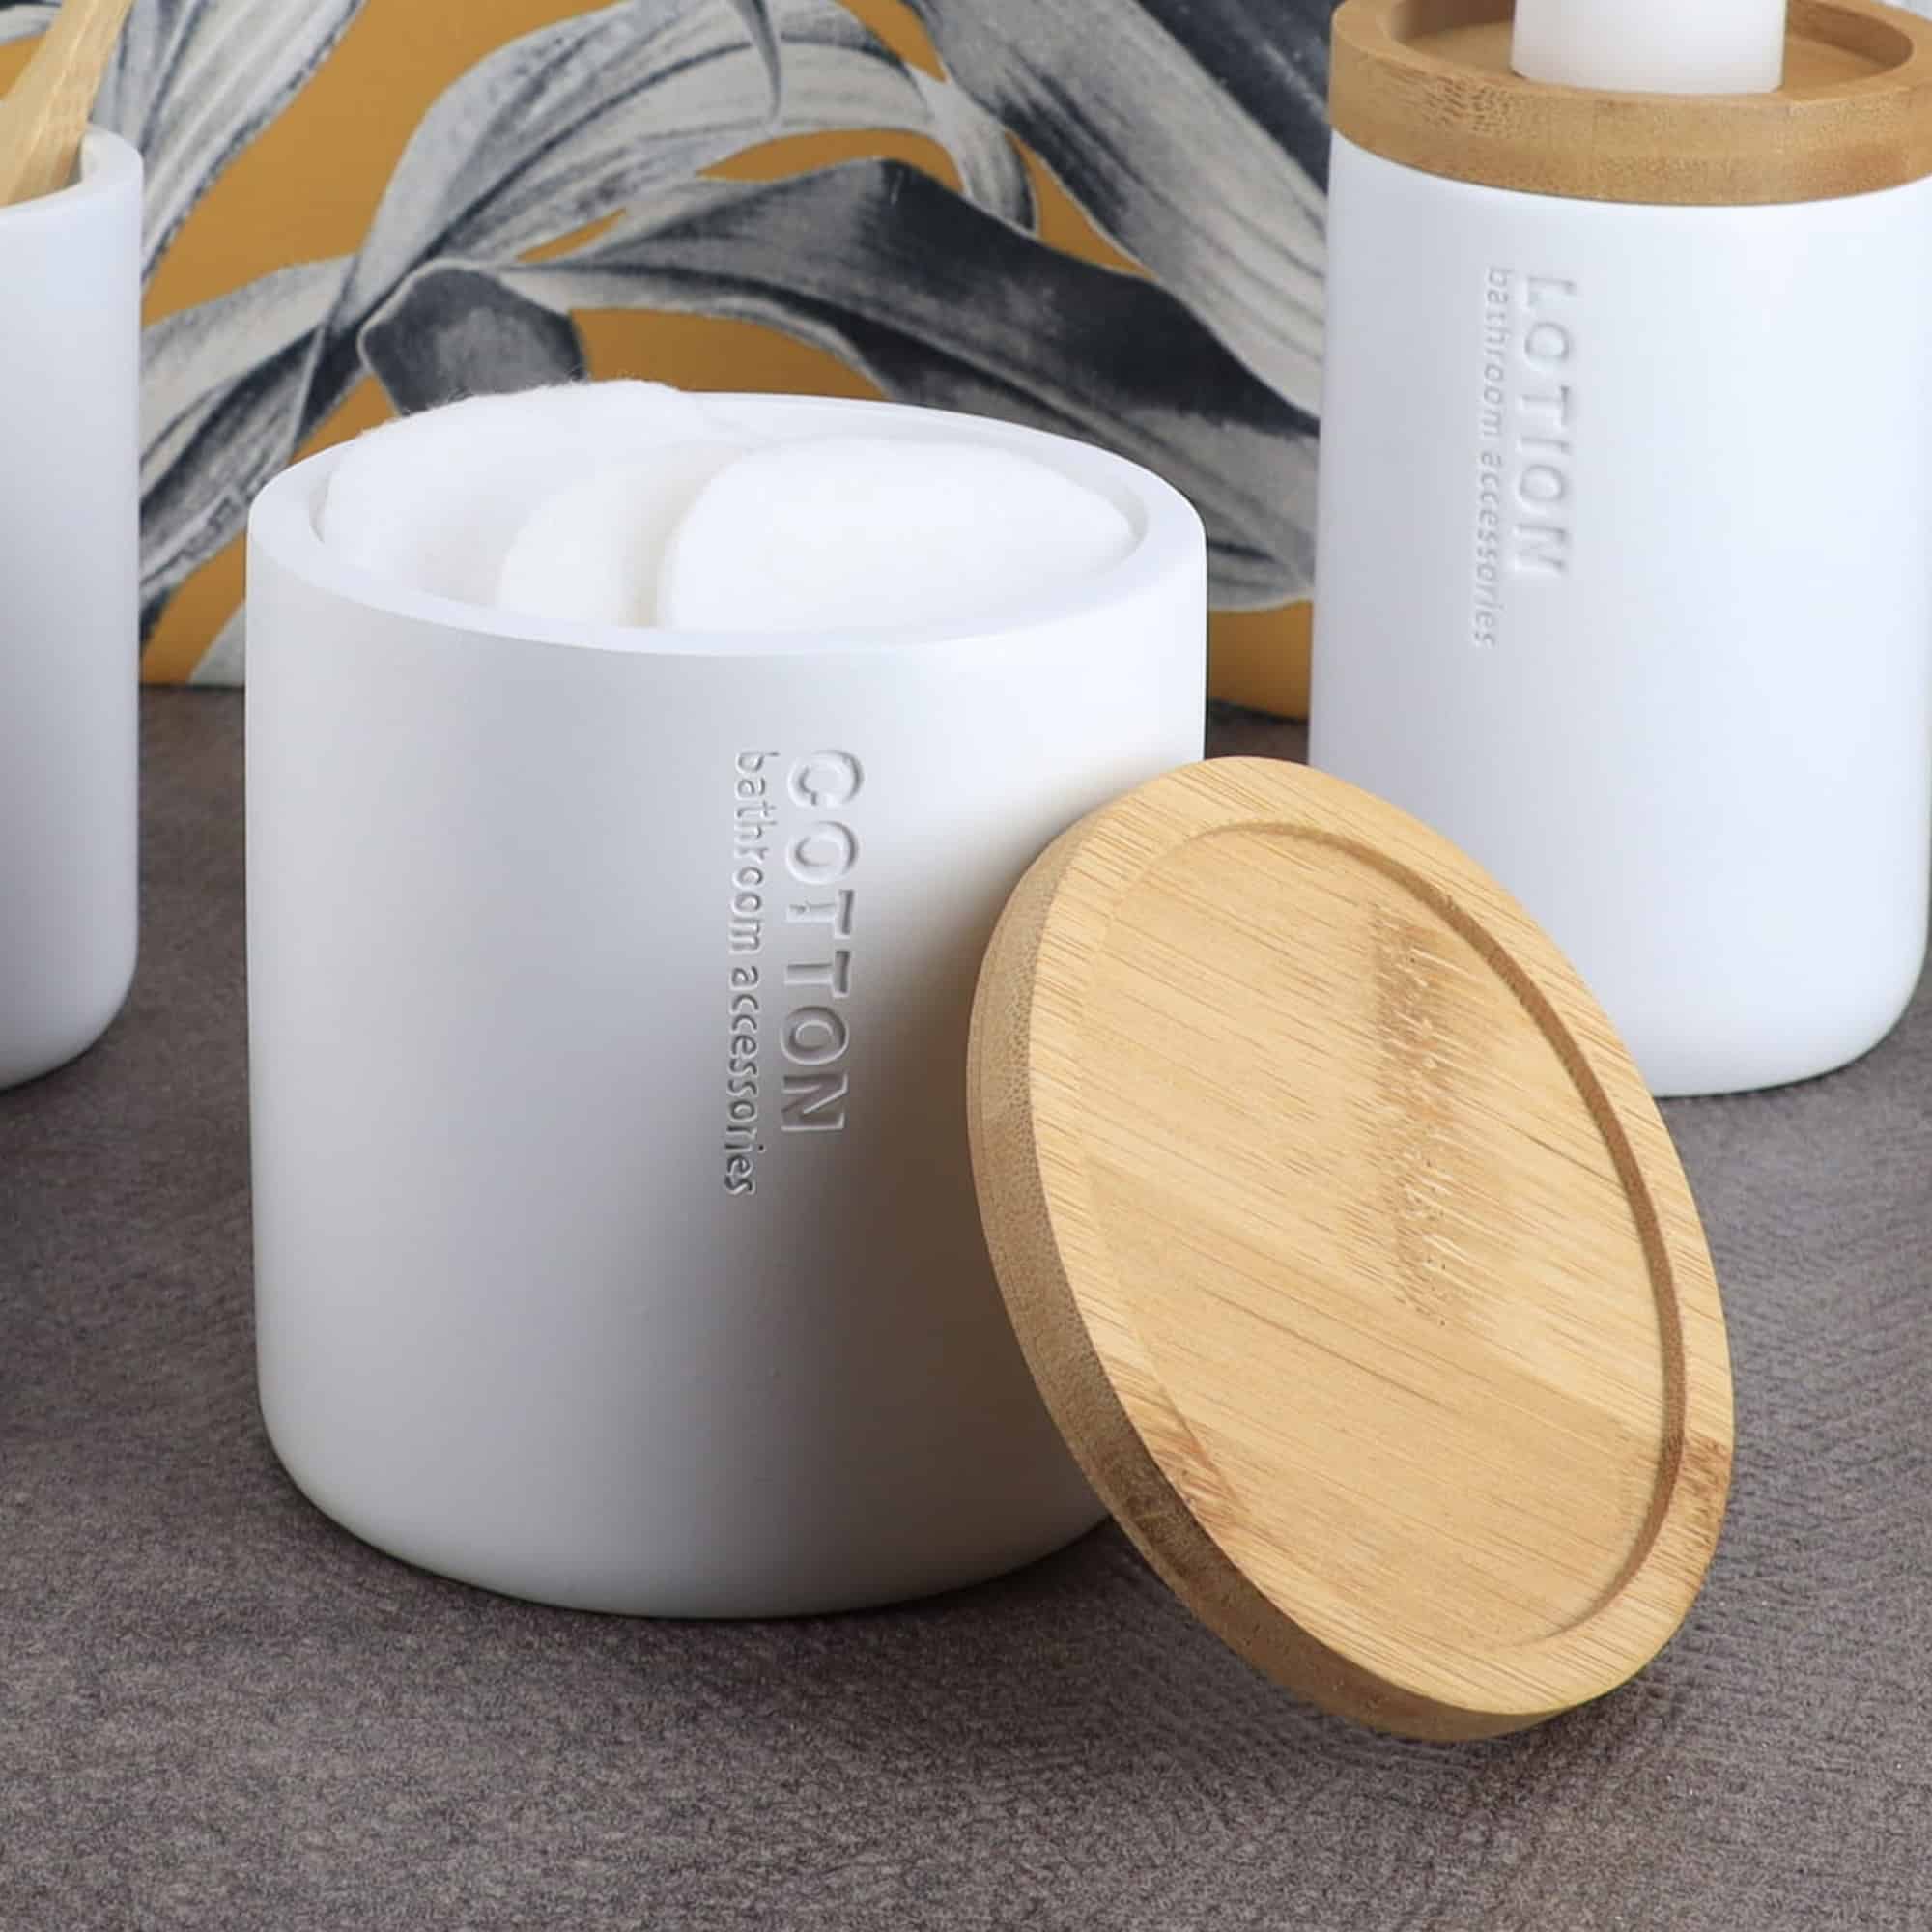 Elegante Kit de Accesorios de Baño Blanco con Bambú Natural 5 piezas Dosificador de Jabón de Manos, Vaso para Vaso, Escobillero, Caja de Algodón y Jabonera